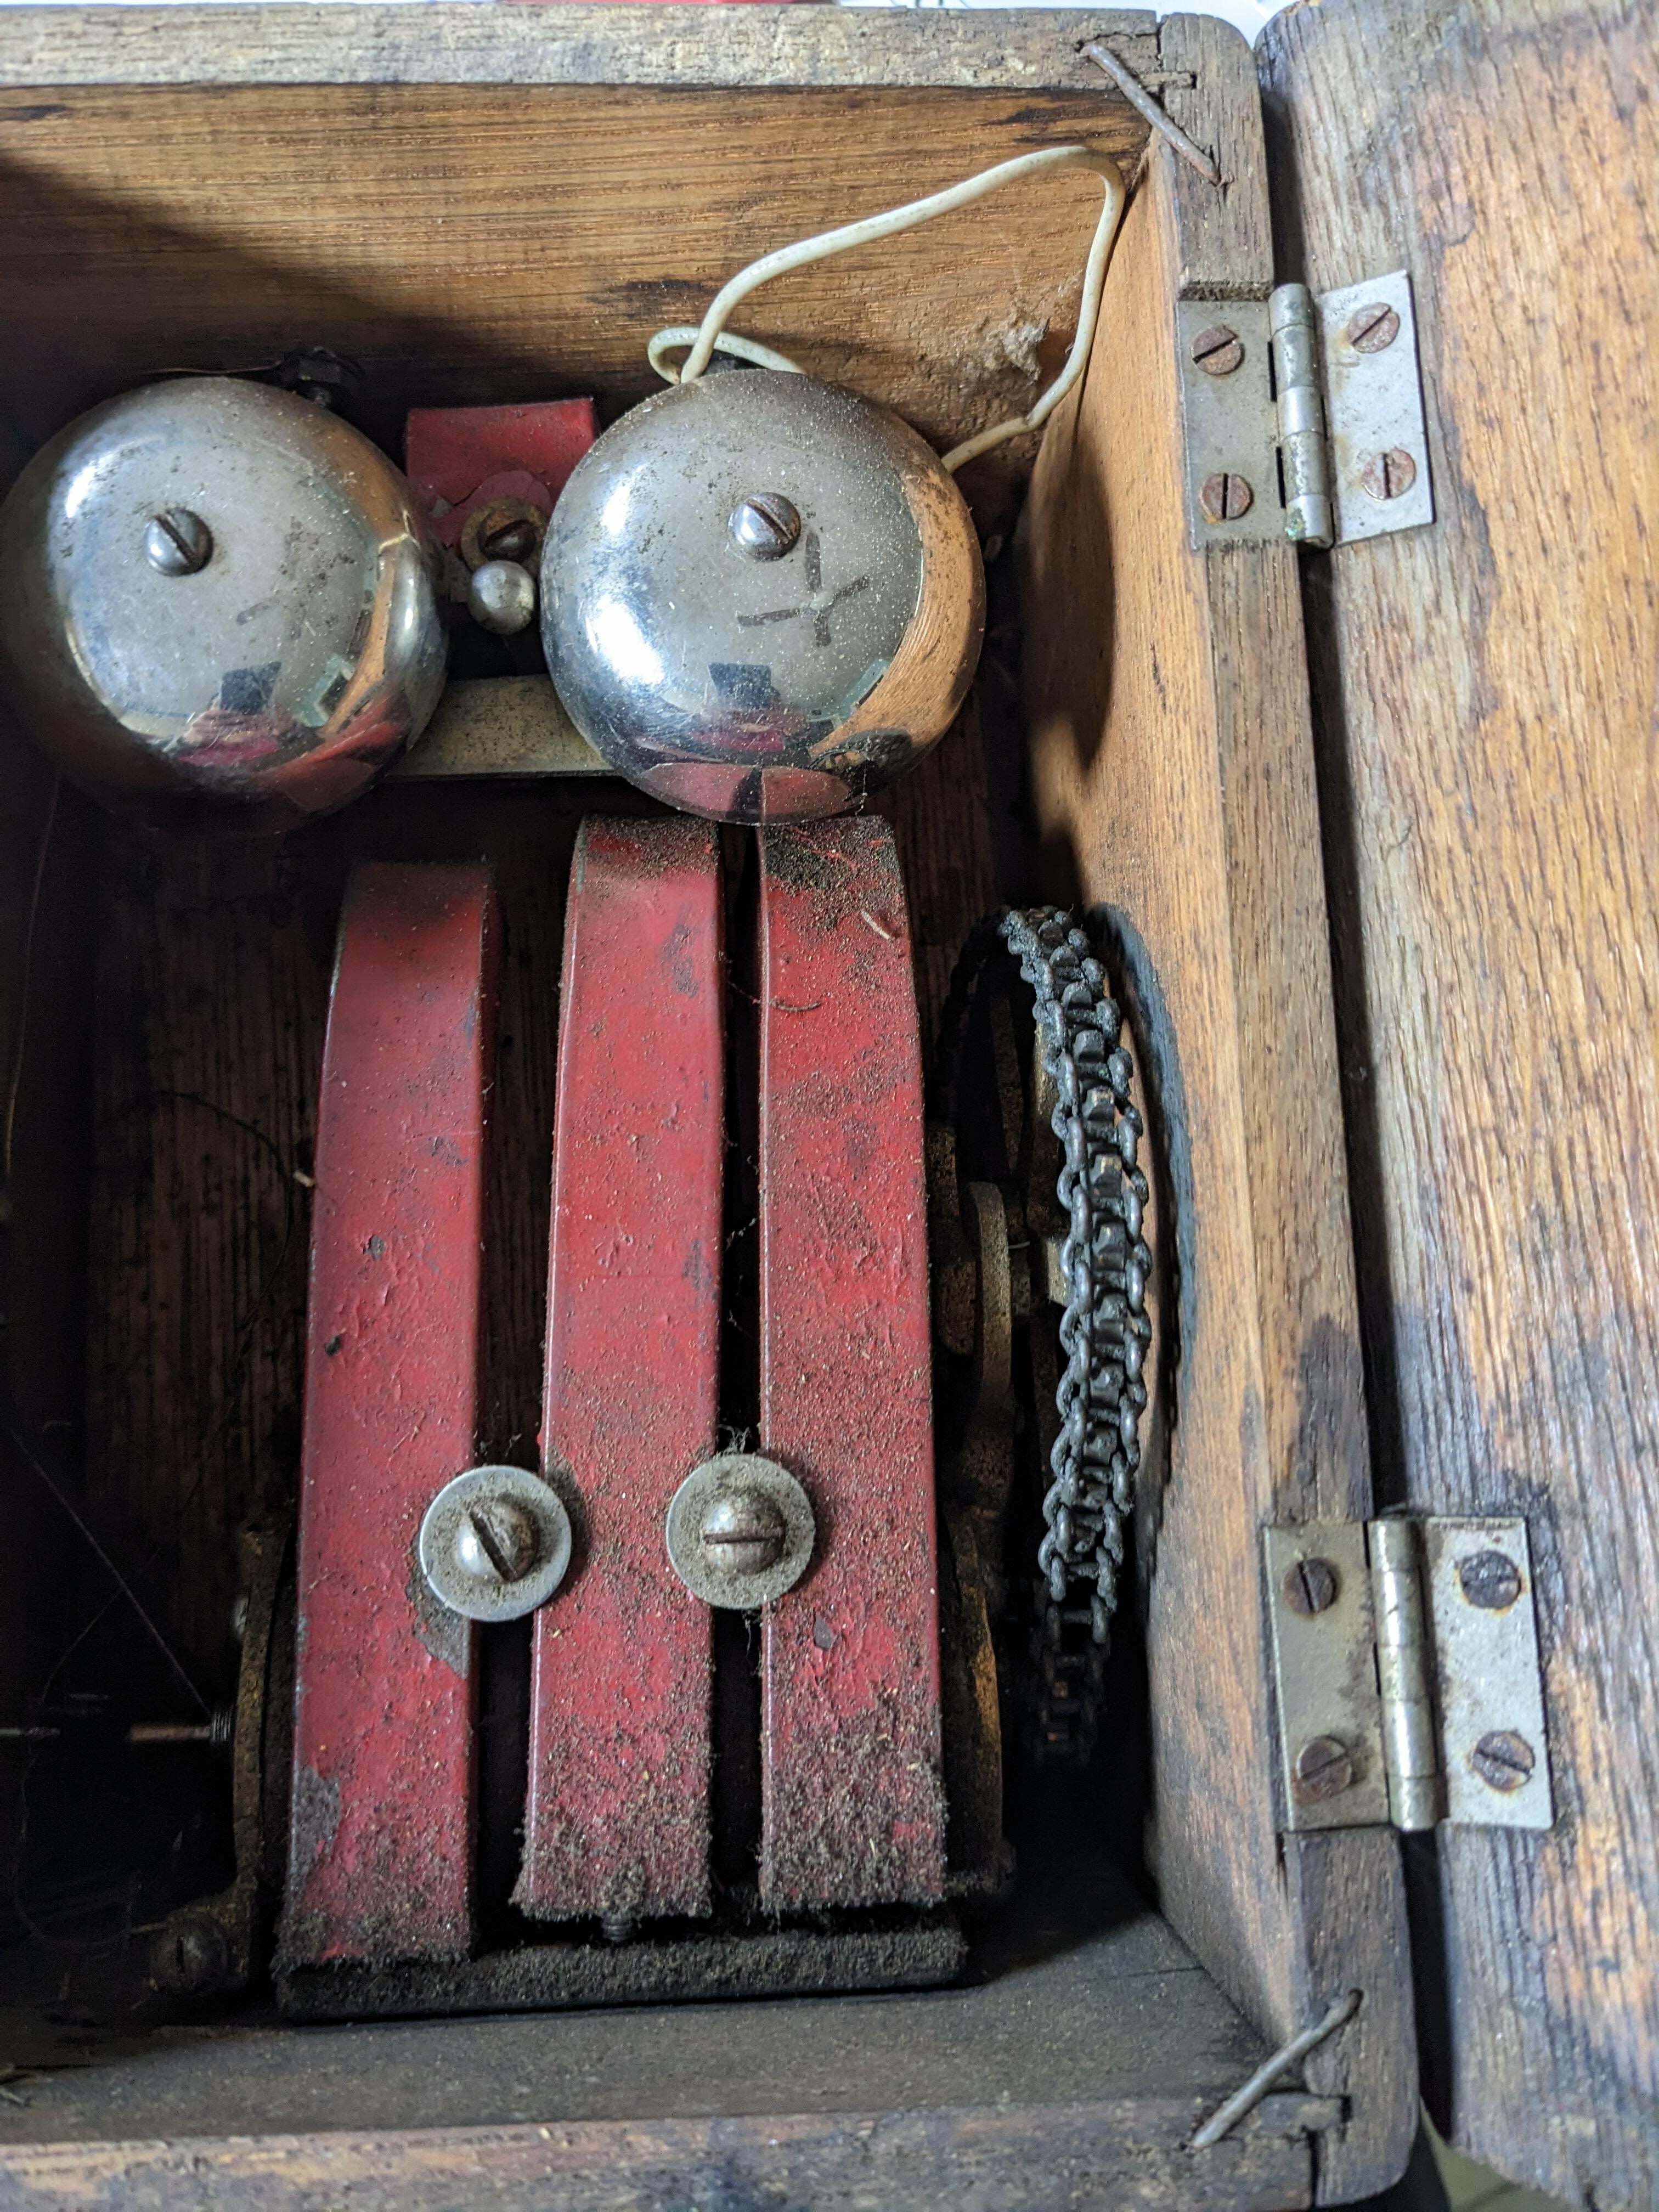 Quel est ce mécanisme ? Il se trouve dans une boîte en bois et comporte une manivelle qui fait tourner une chaîne à l'intérieur, ce qui pourrait générer de l'électricité ?